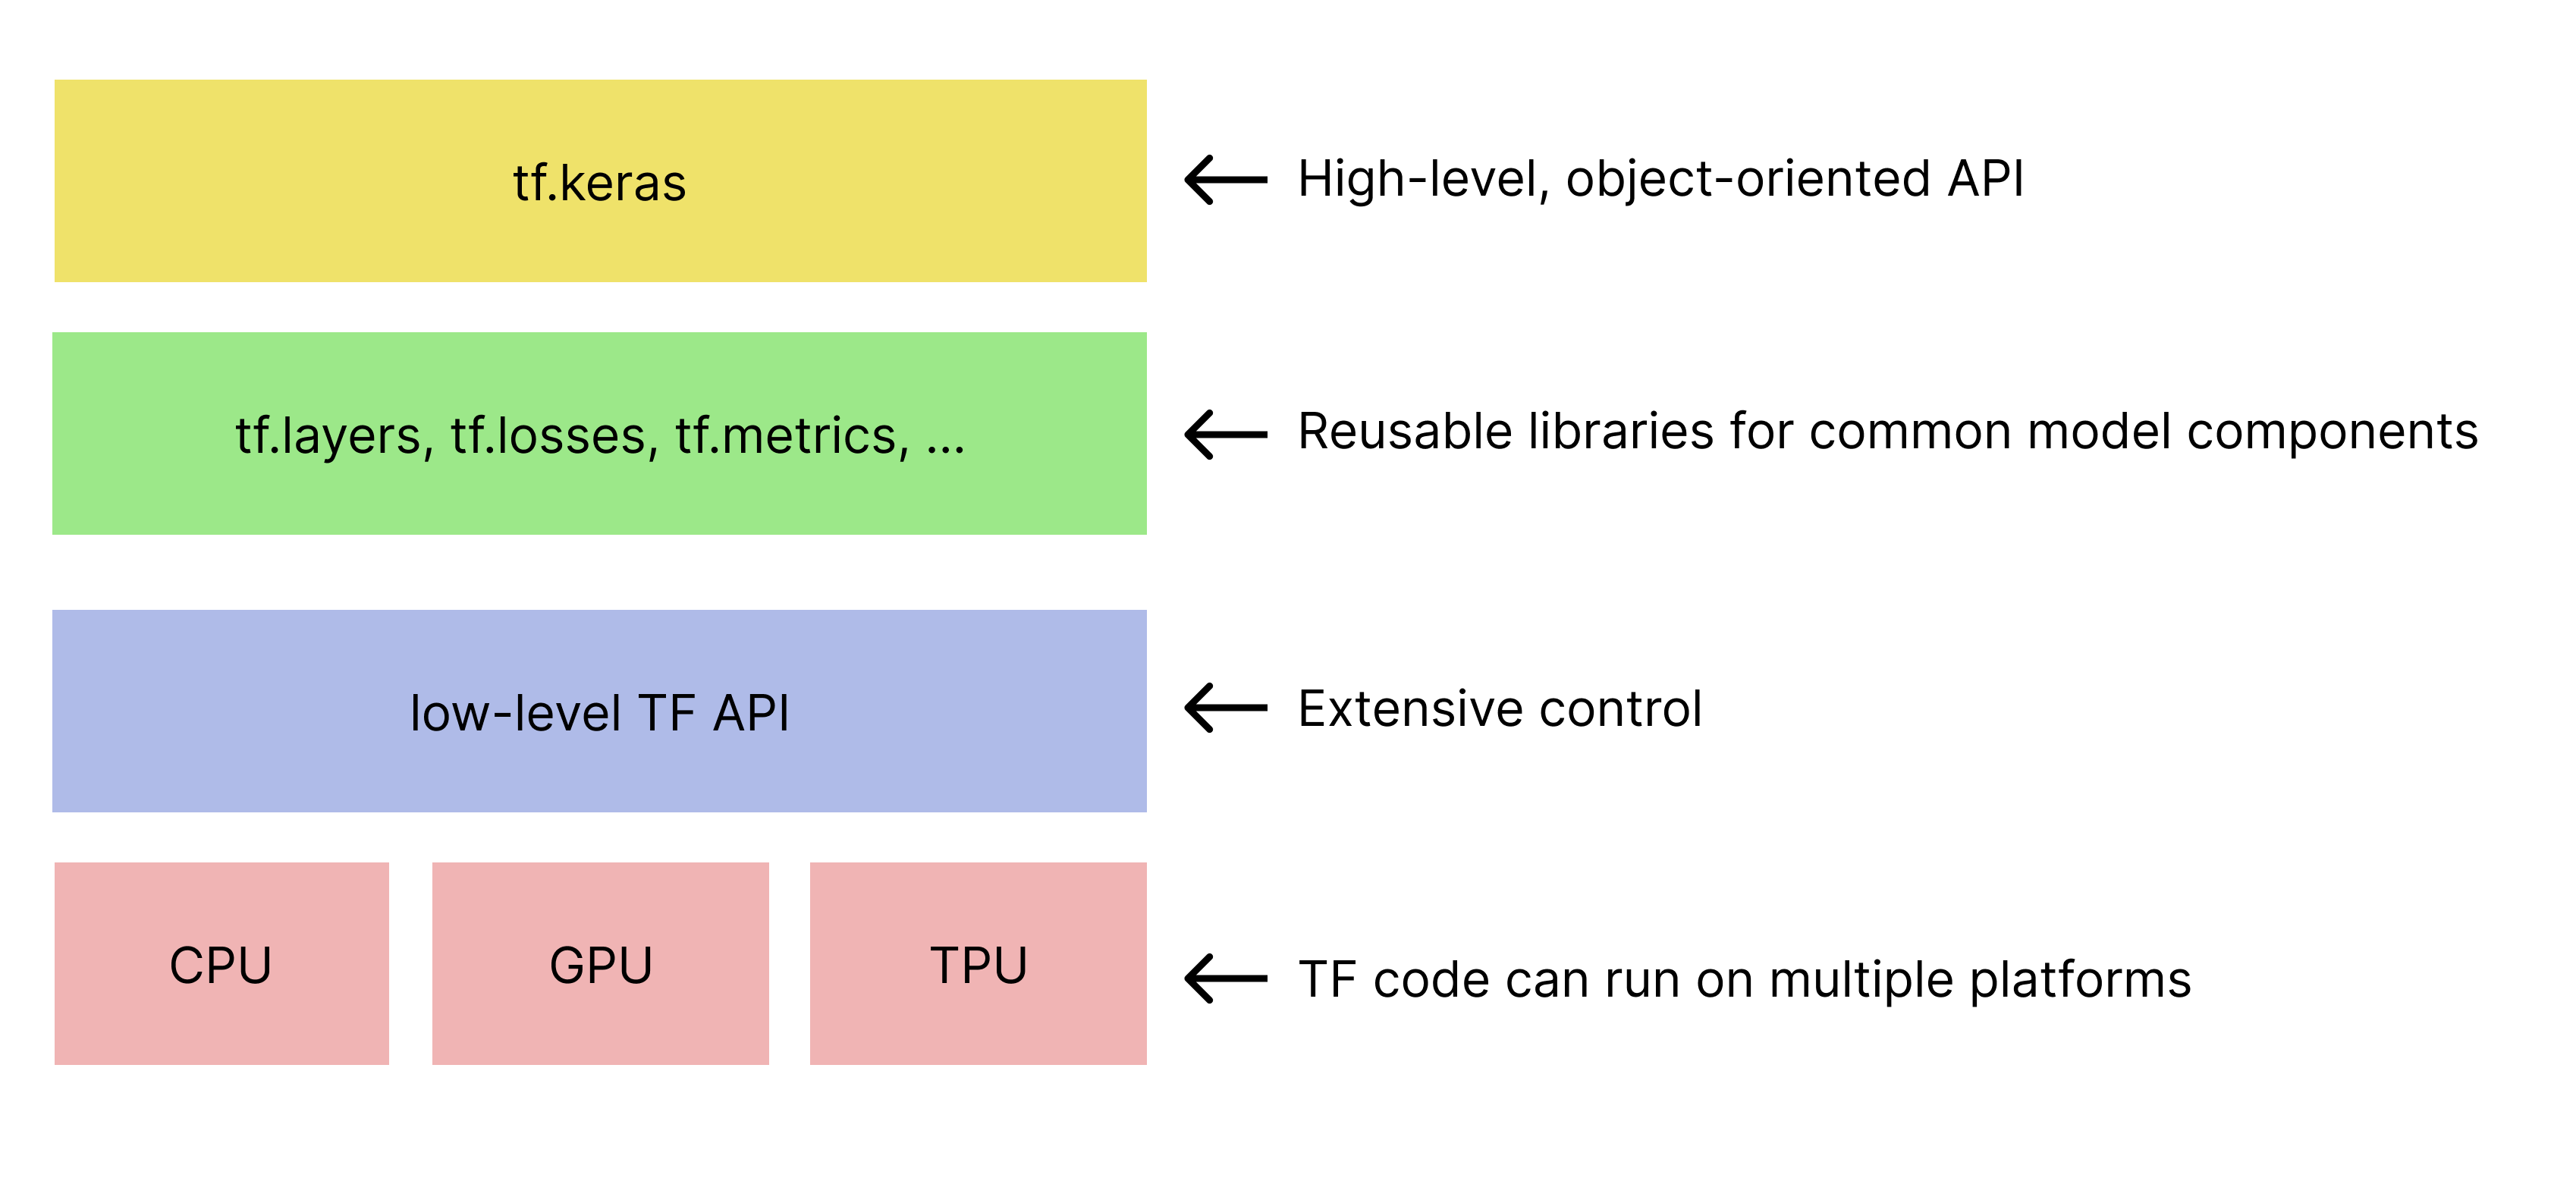 Uproszczona hierarchia zestawów narzędzi TensorFlow 
   Interfejs tf.keras API jest widoczny u góry.